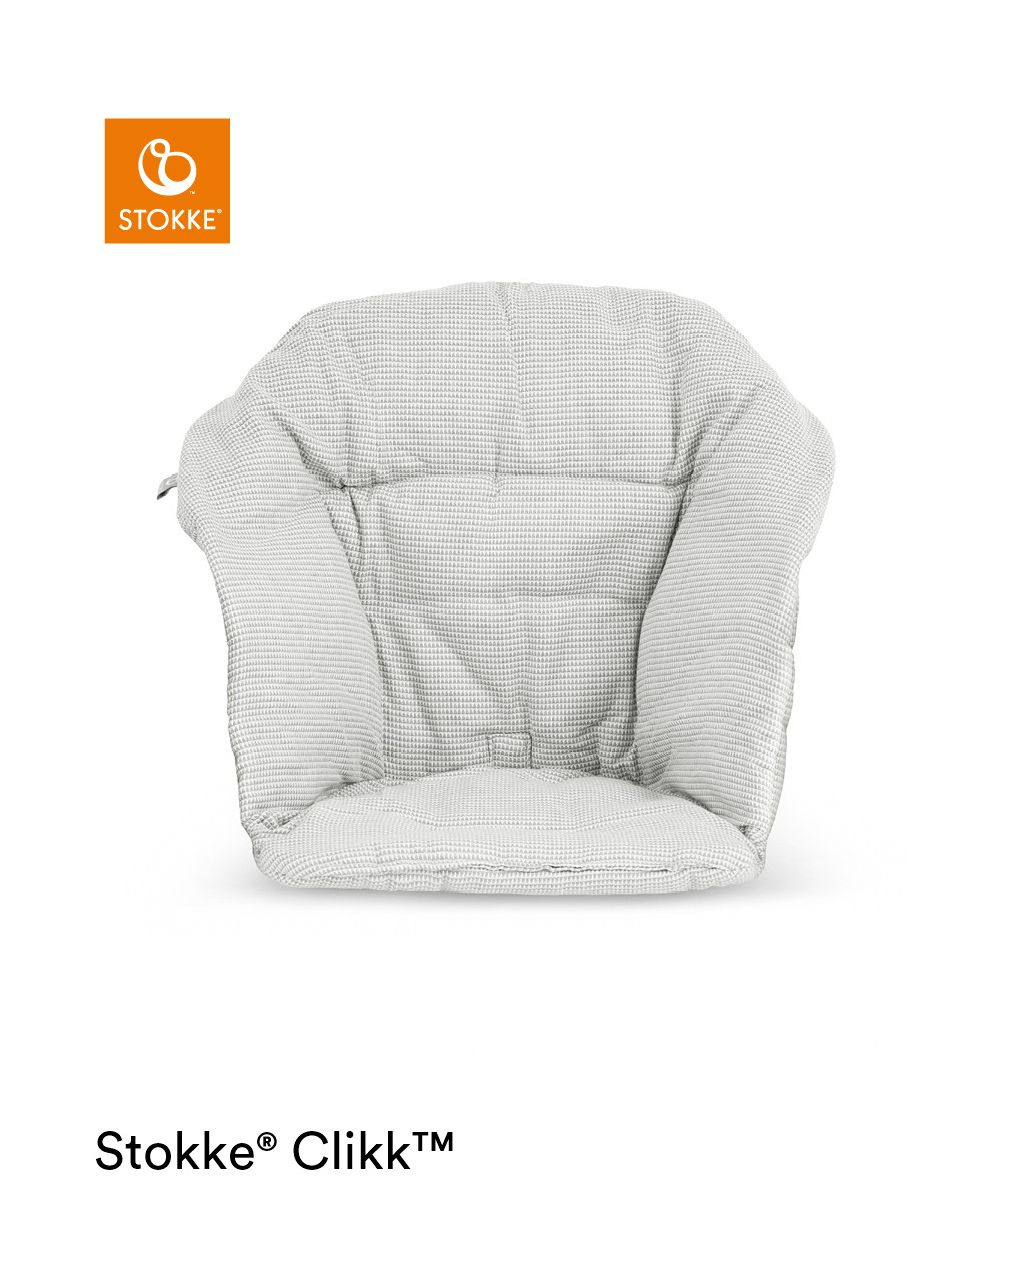 Stokke® clikk™ cushion - Stokke